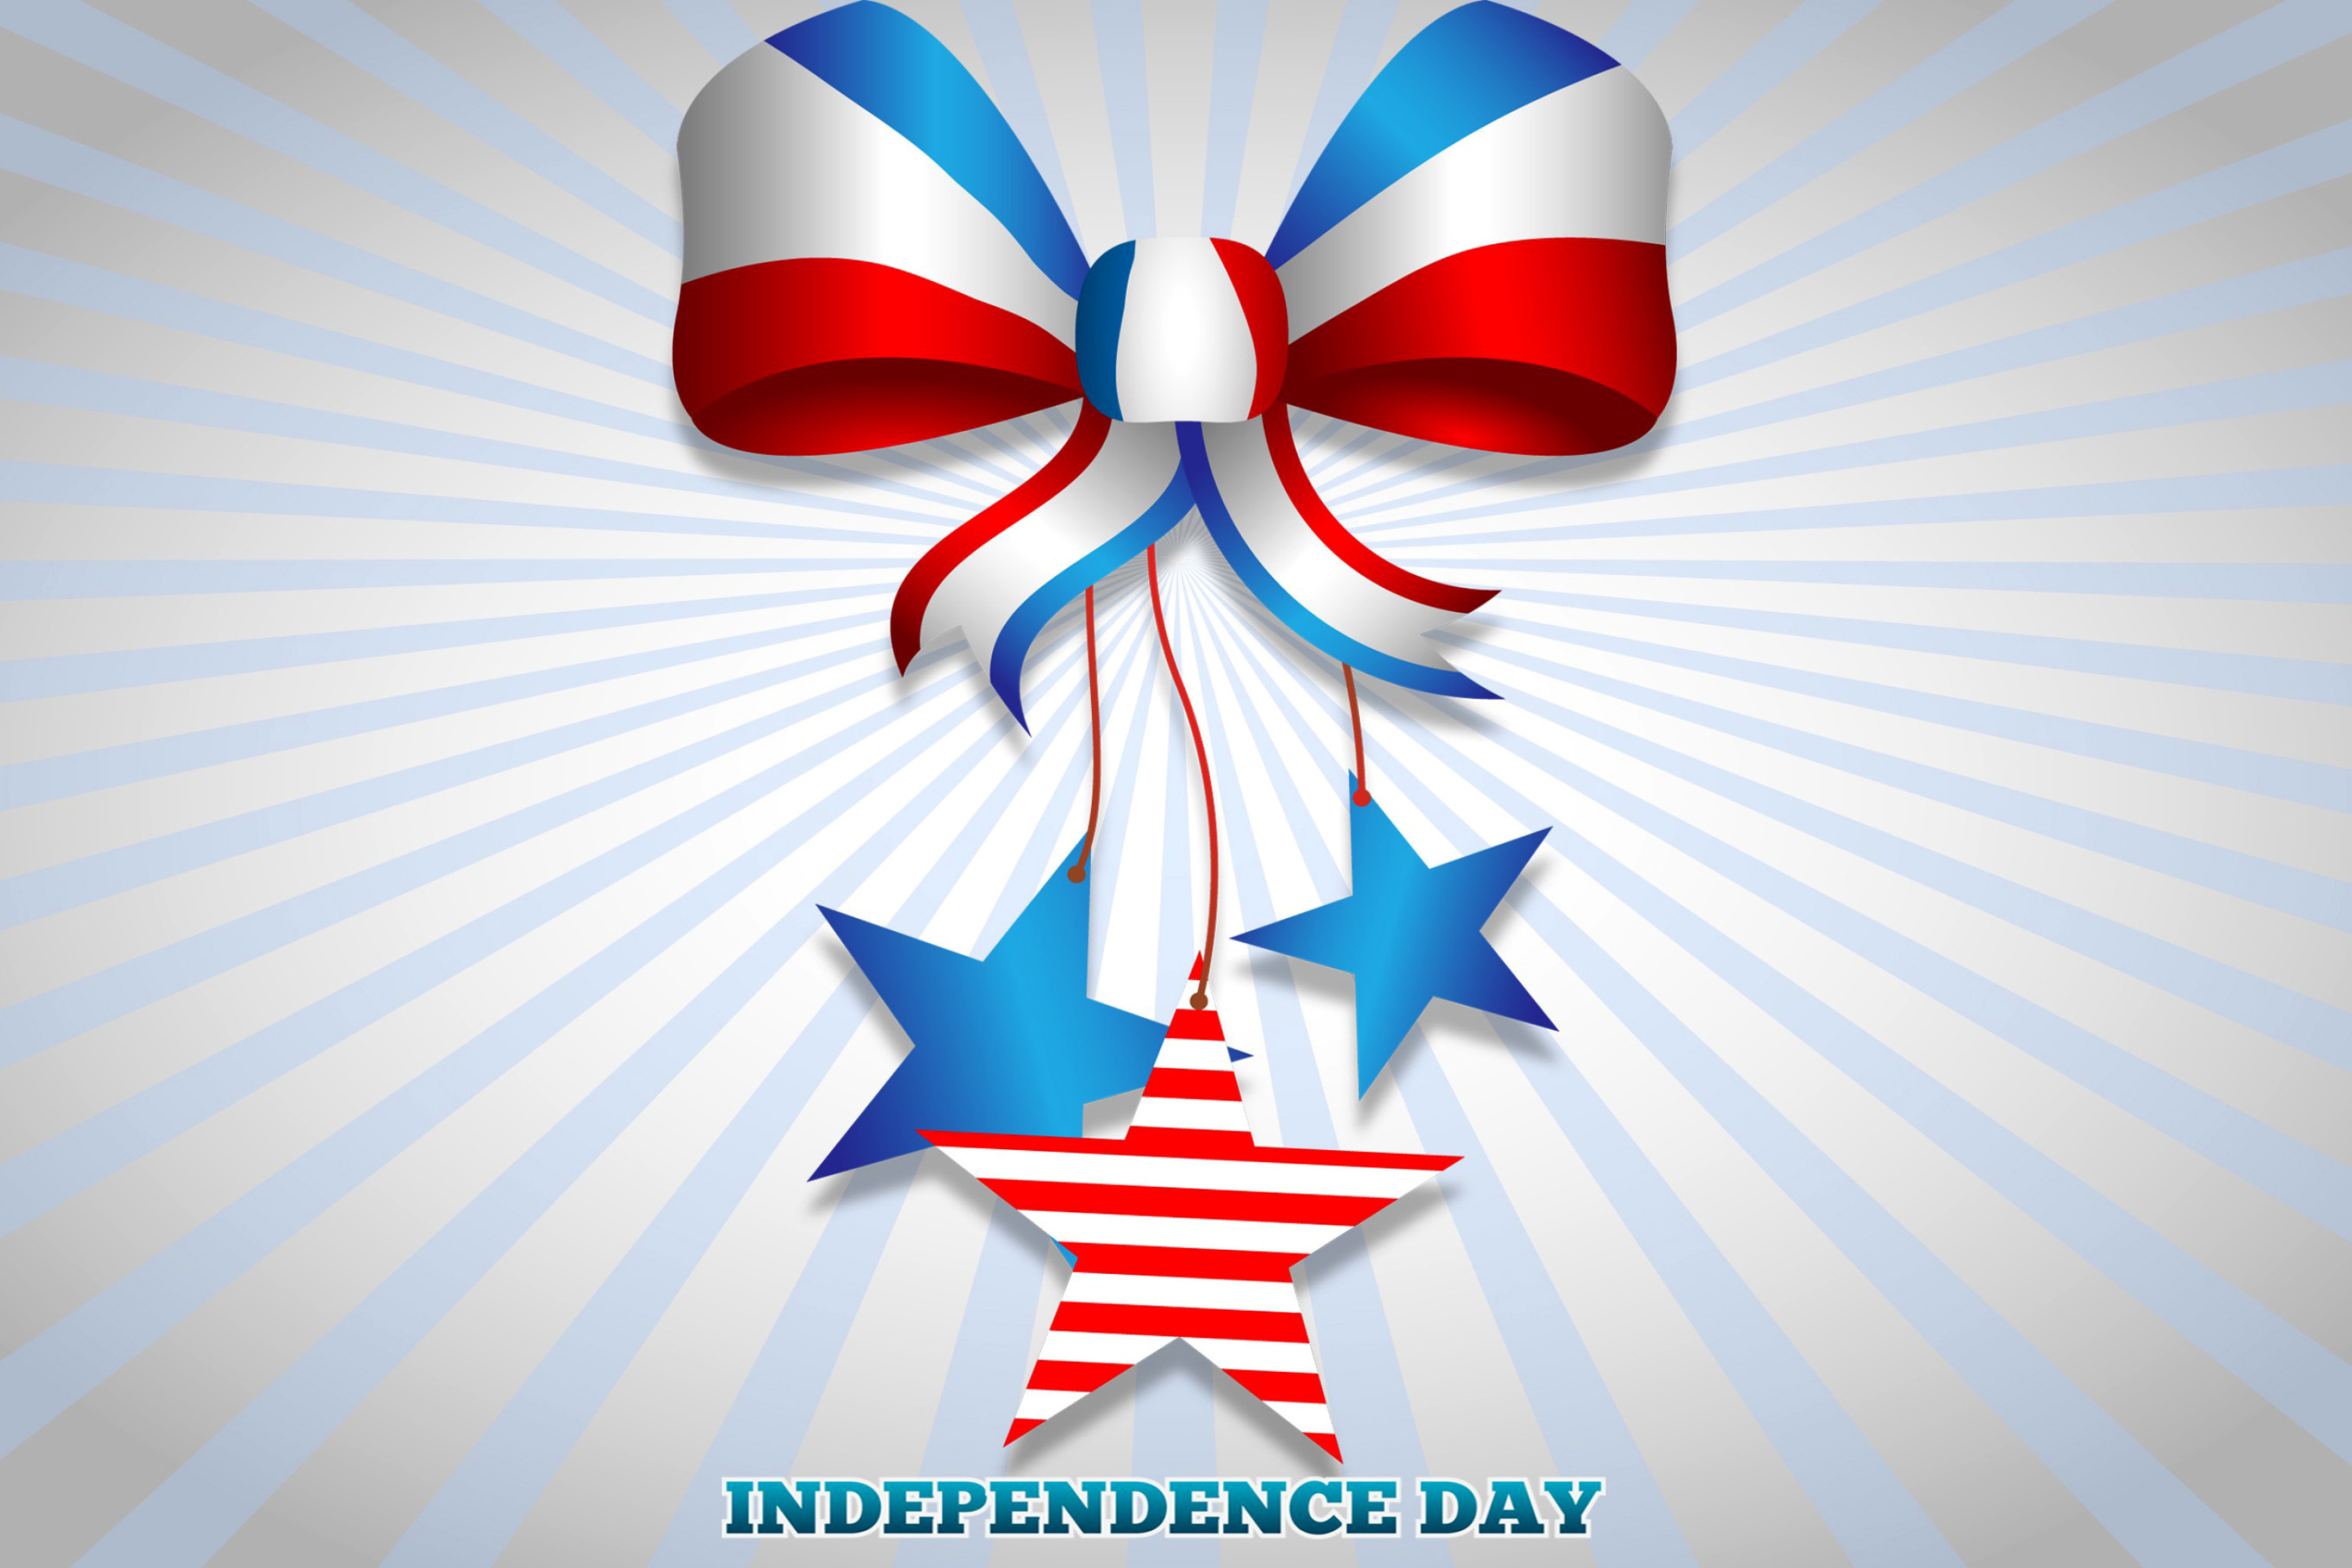 Sfondi United states america Idependence day 4th july 2880x1920